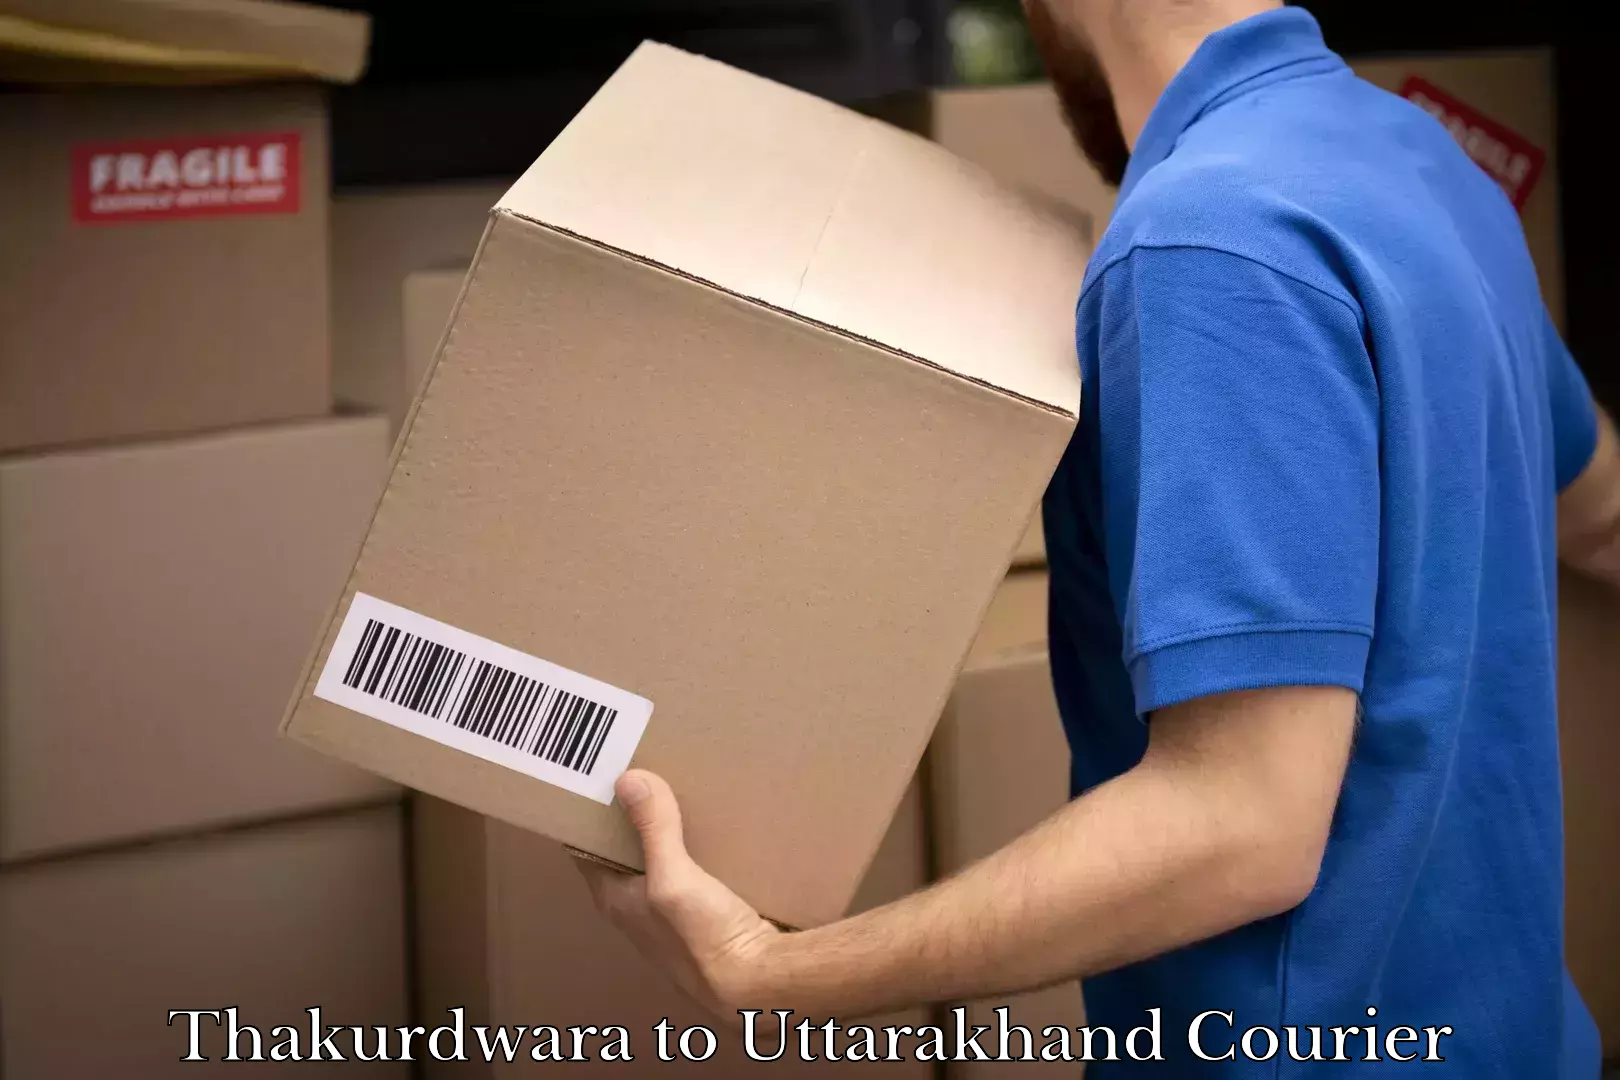 Next-day delivery options Thakurdwara to Uttarakhand